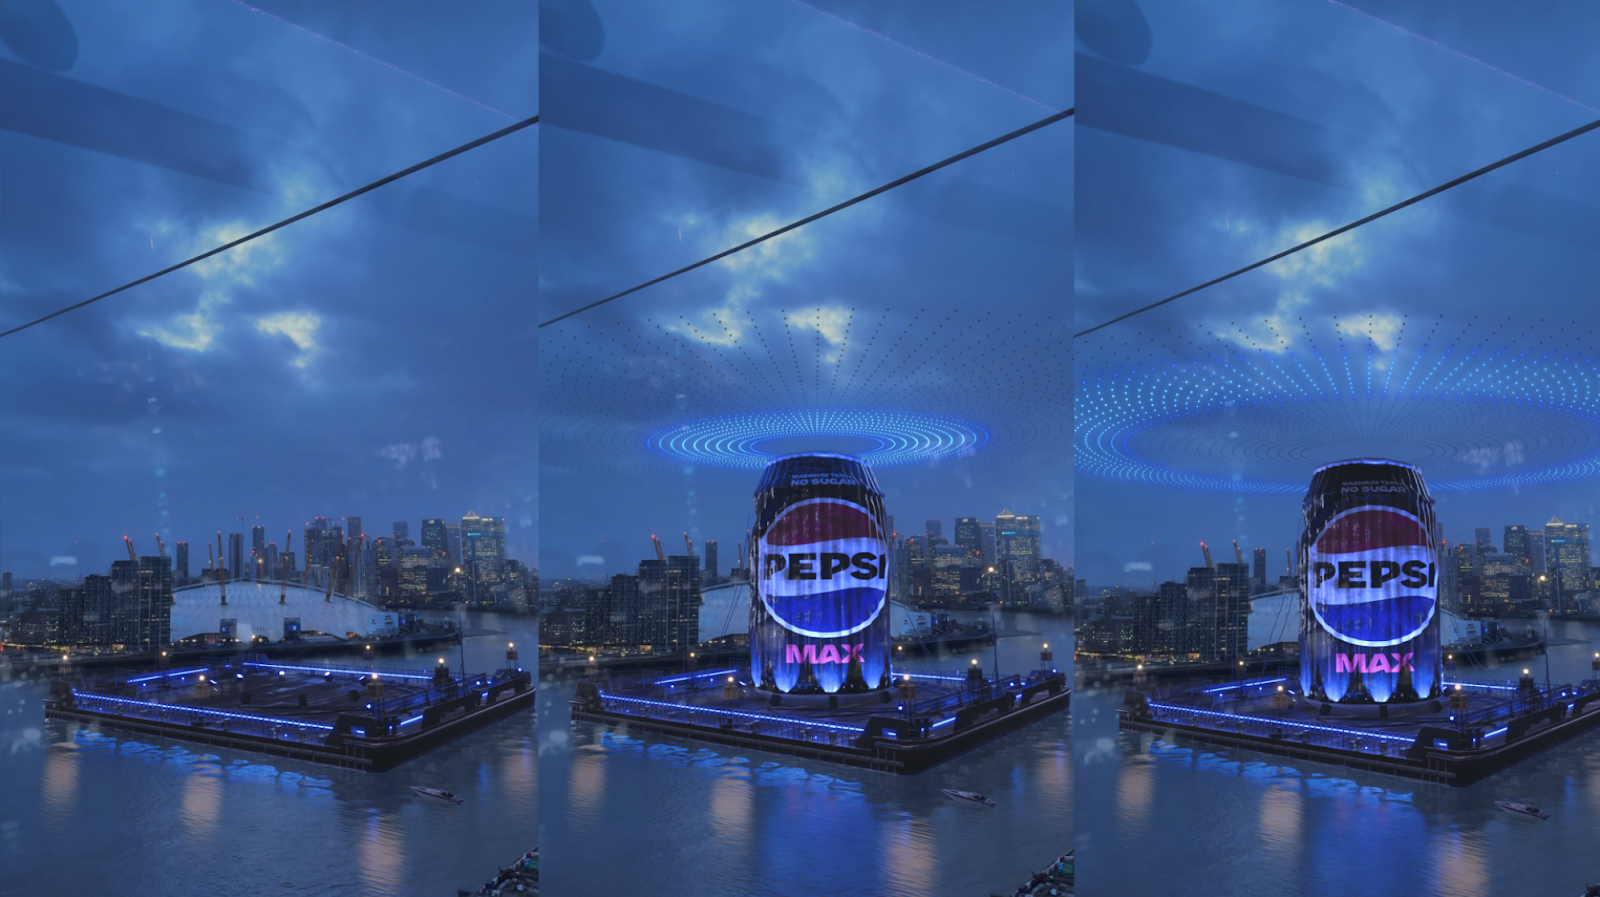 Pepsi MAX, yeni görsel kimliğini kutlamak için Thames Nehri’ndeki dev CGI kutusunu tanıttı